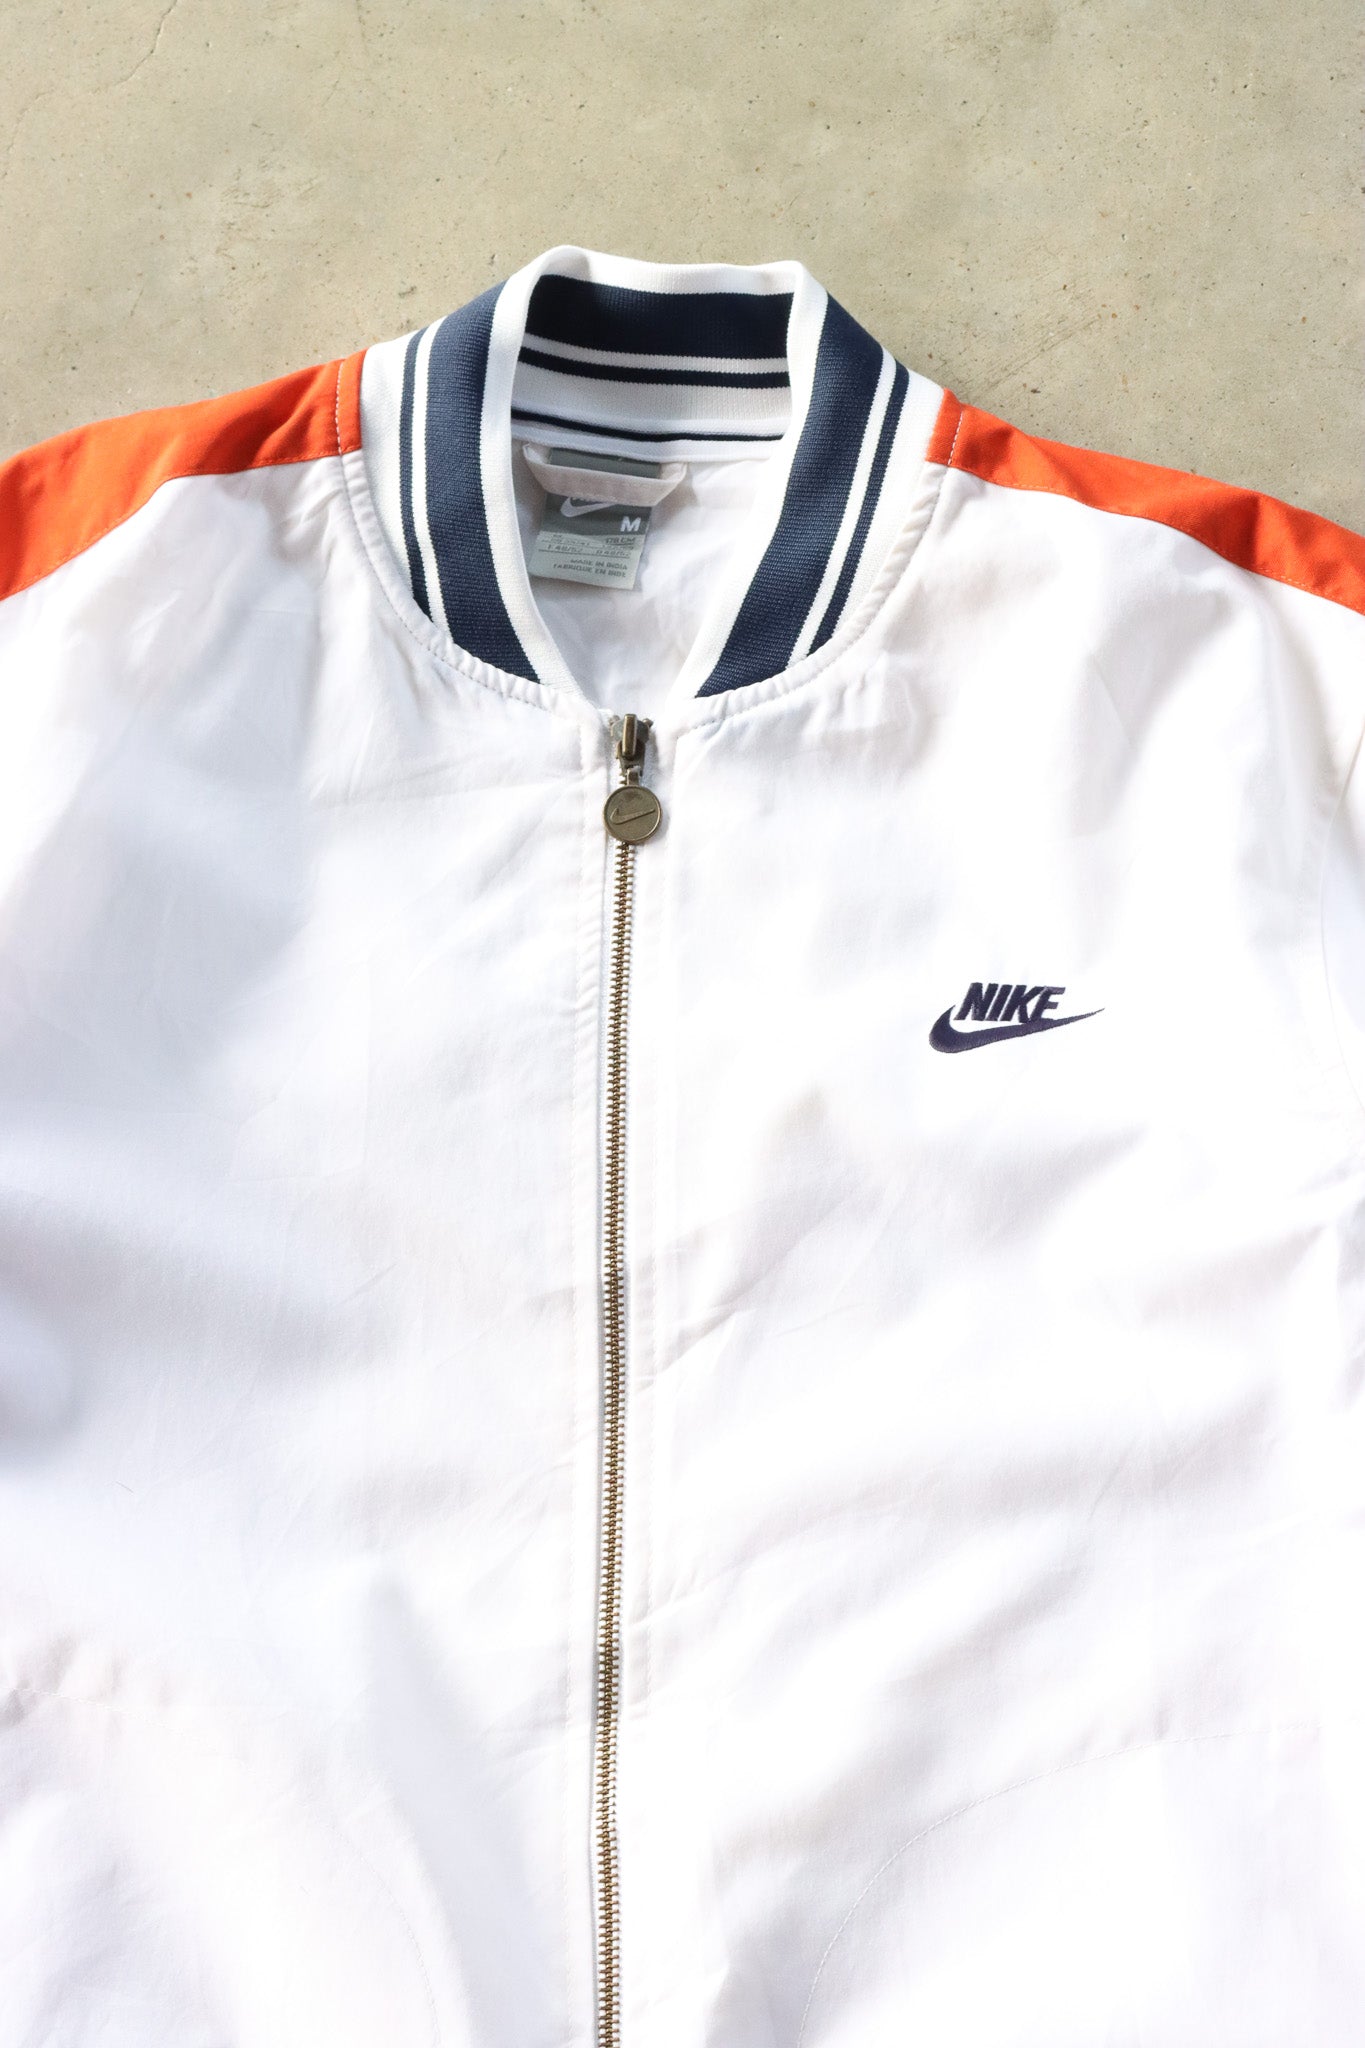 Vintage Nike Jacket Medium